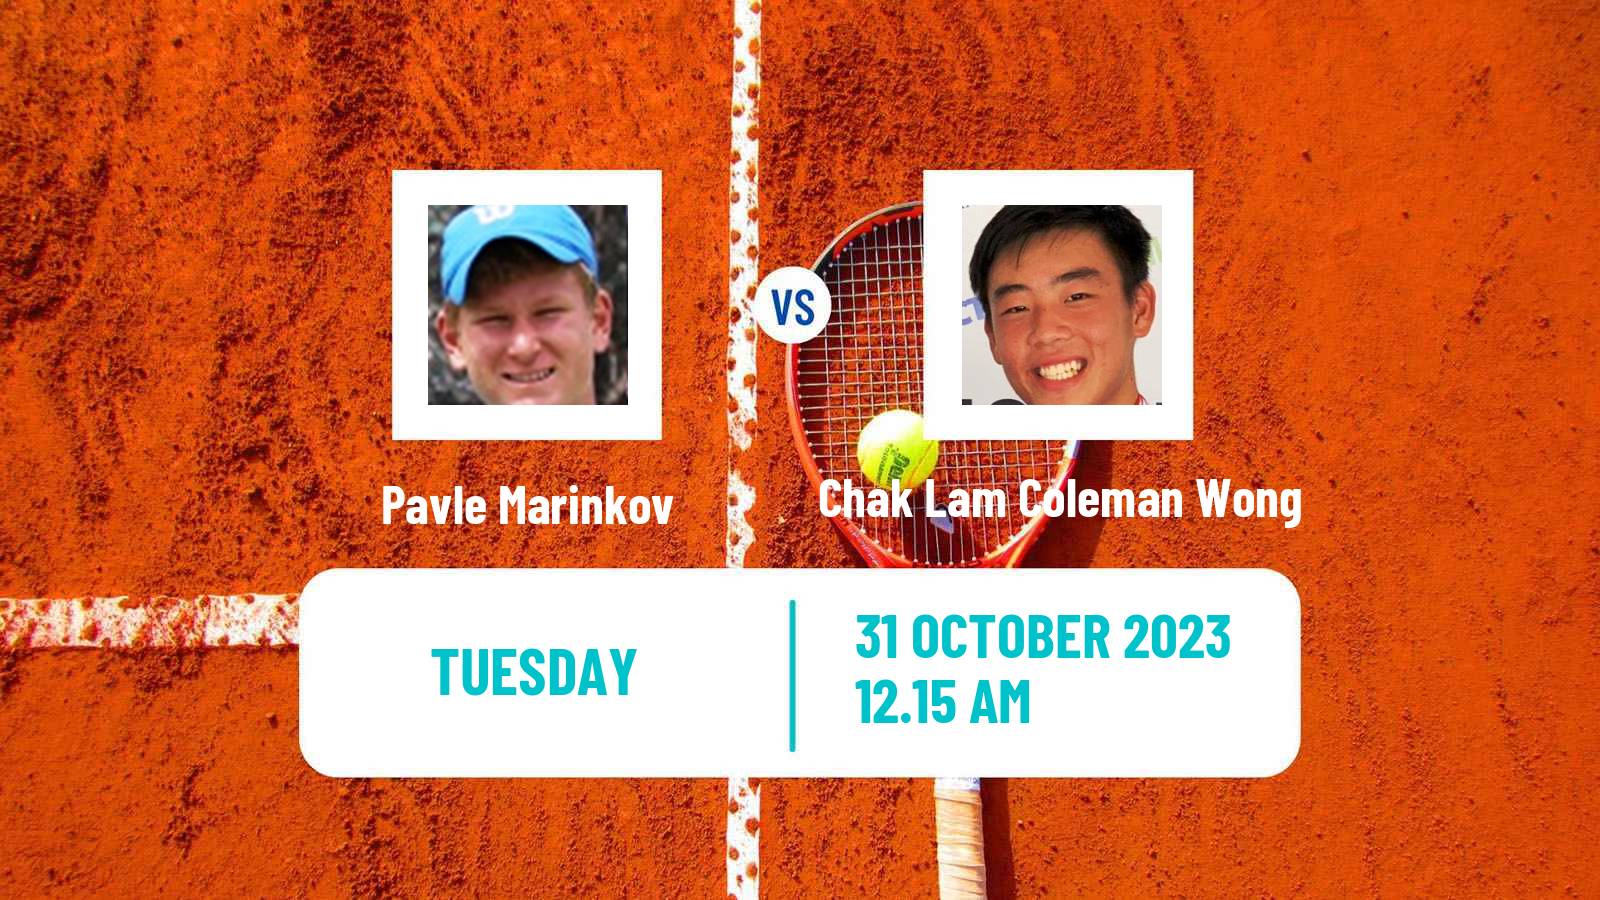 Tennis Sydney Challenger Men Pavle Marinkov - Chak Lam Coleman Wong